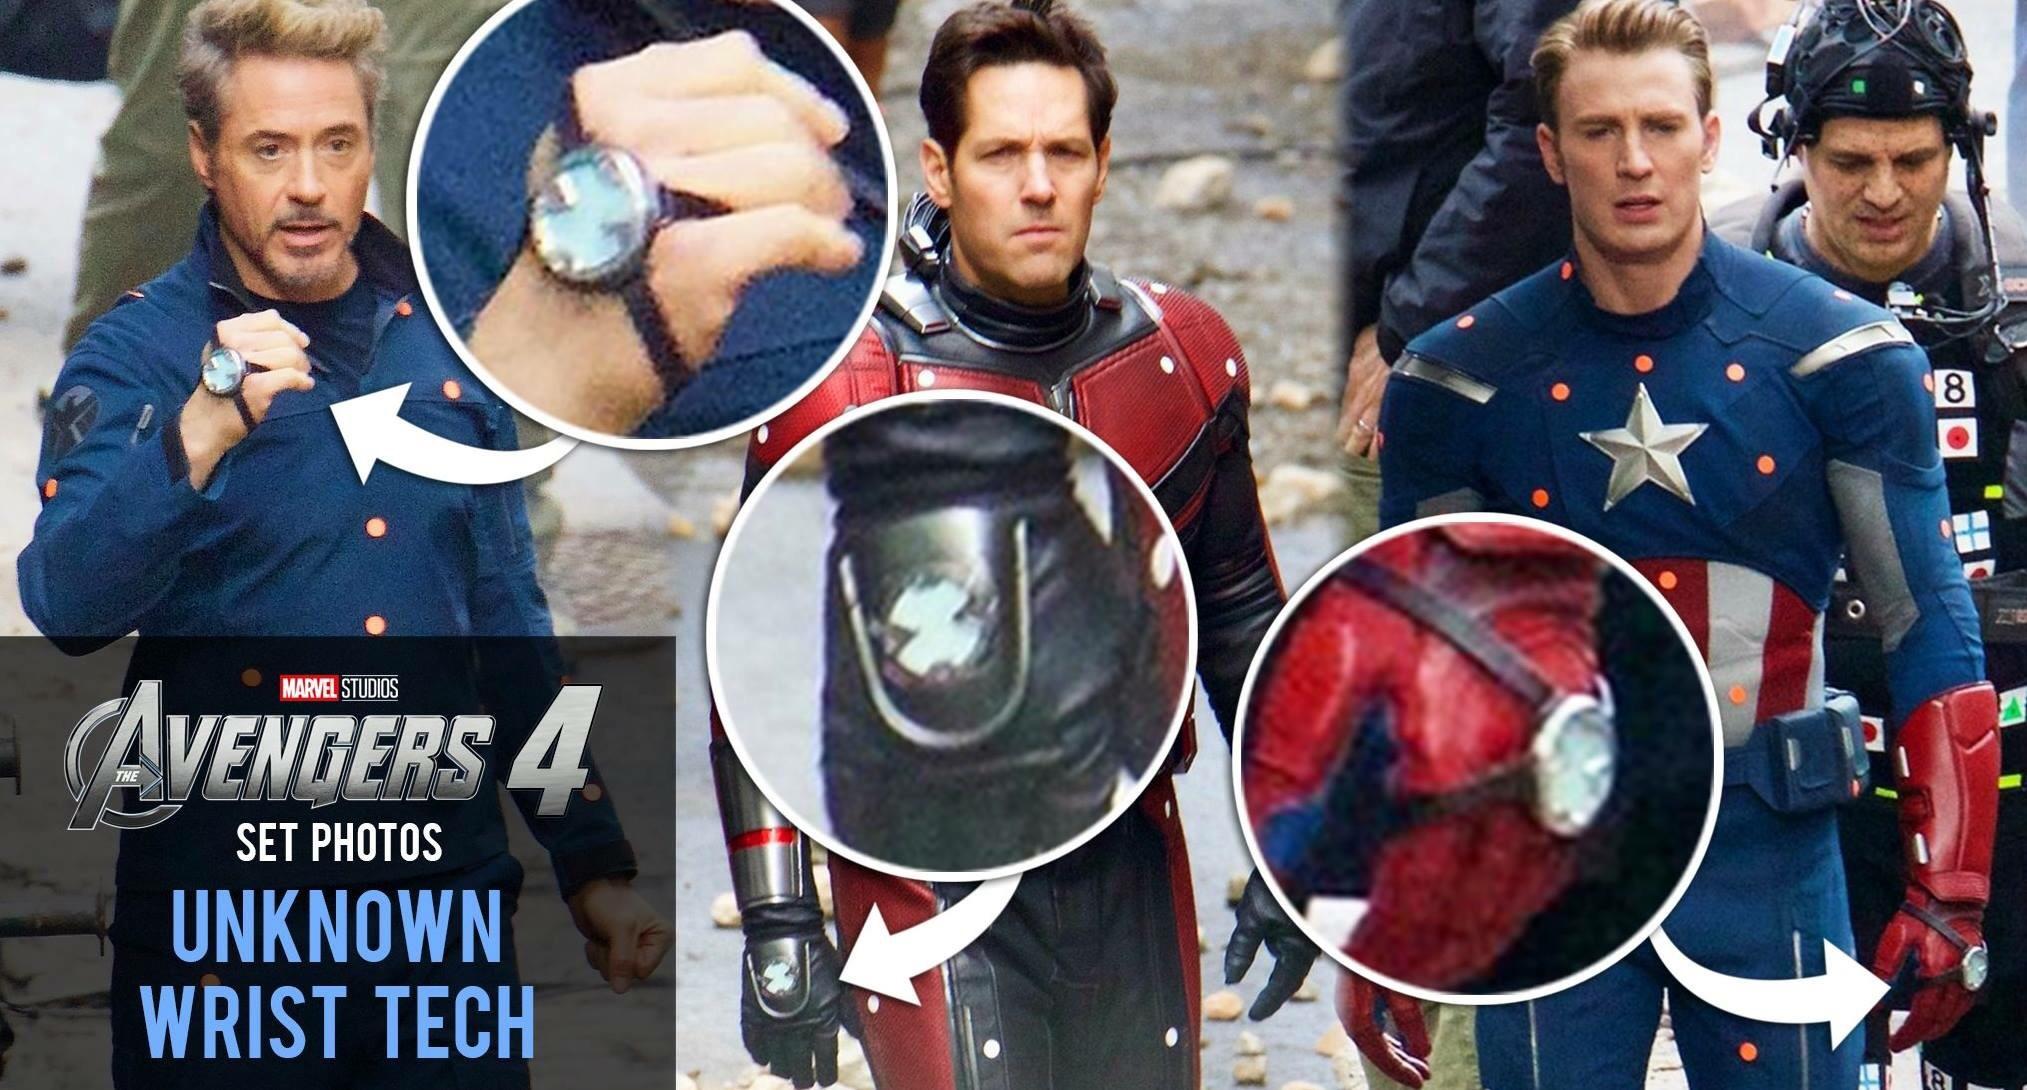 Avengers 4 wrist tech